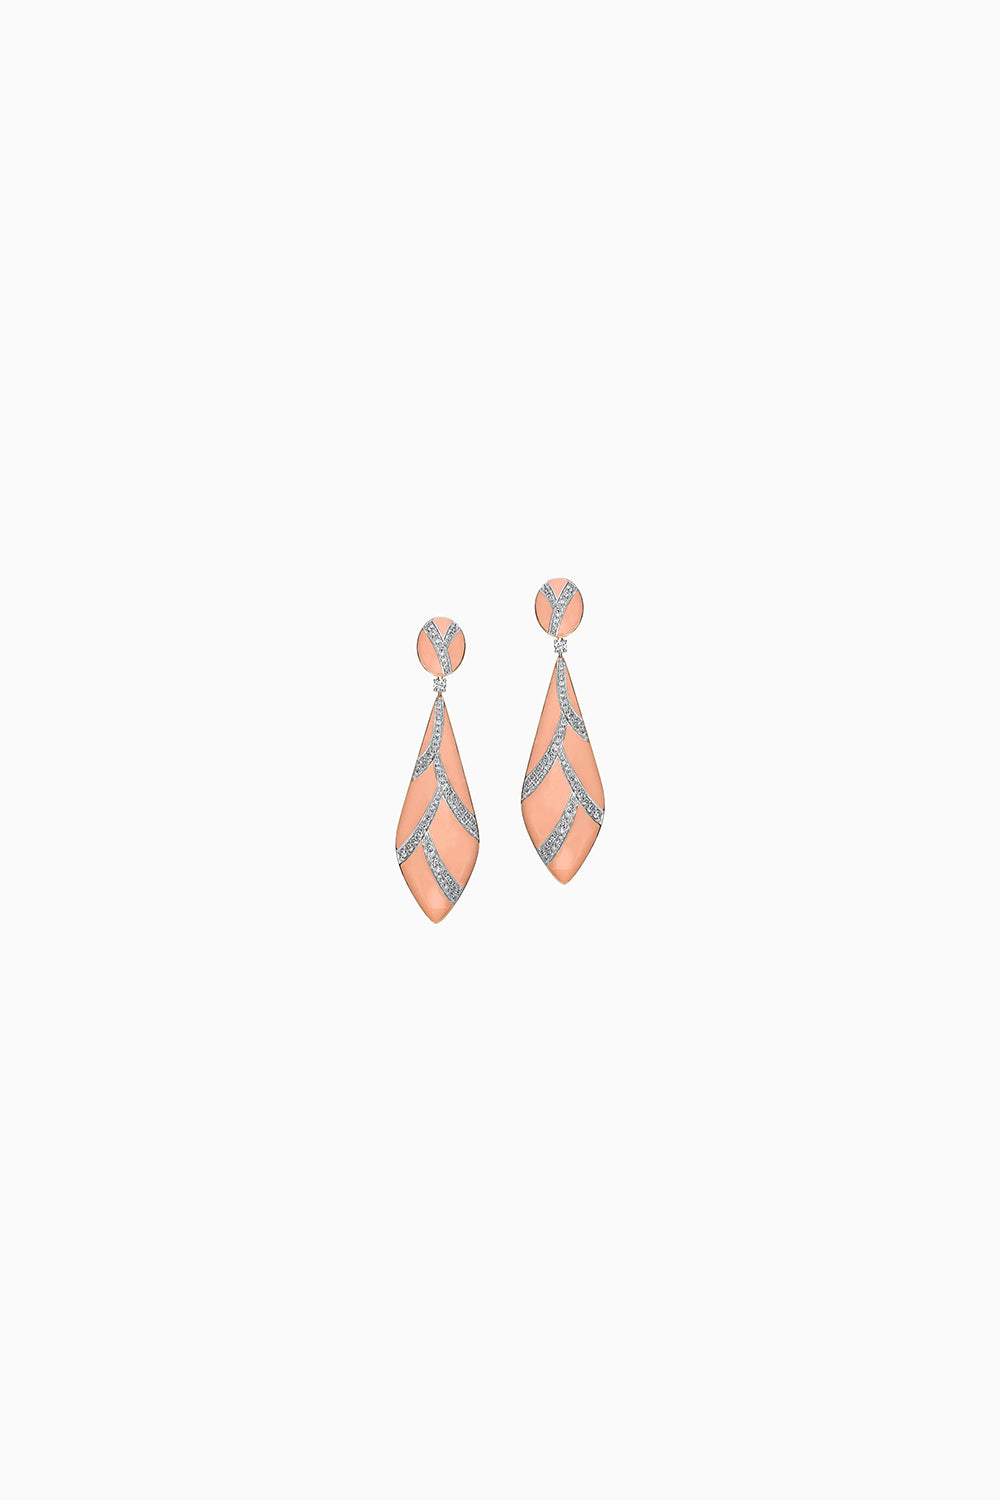 Peach Enamel and Diamond 18KT Gold Earrings